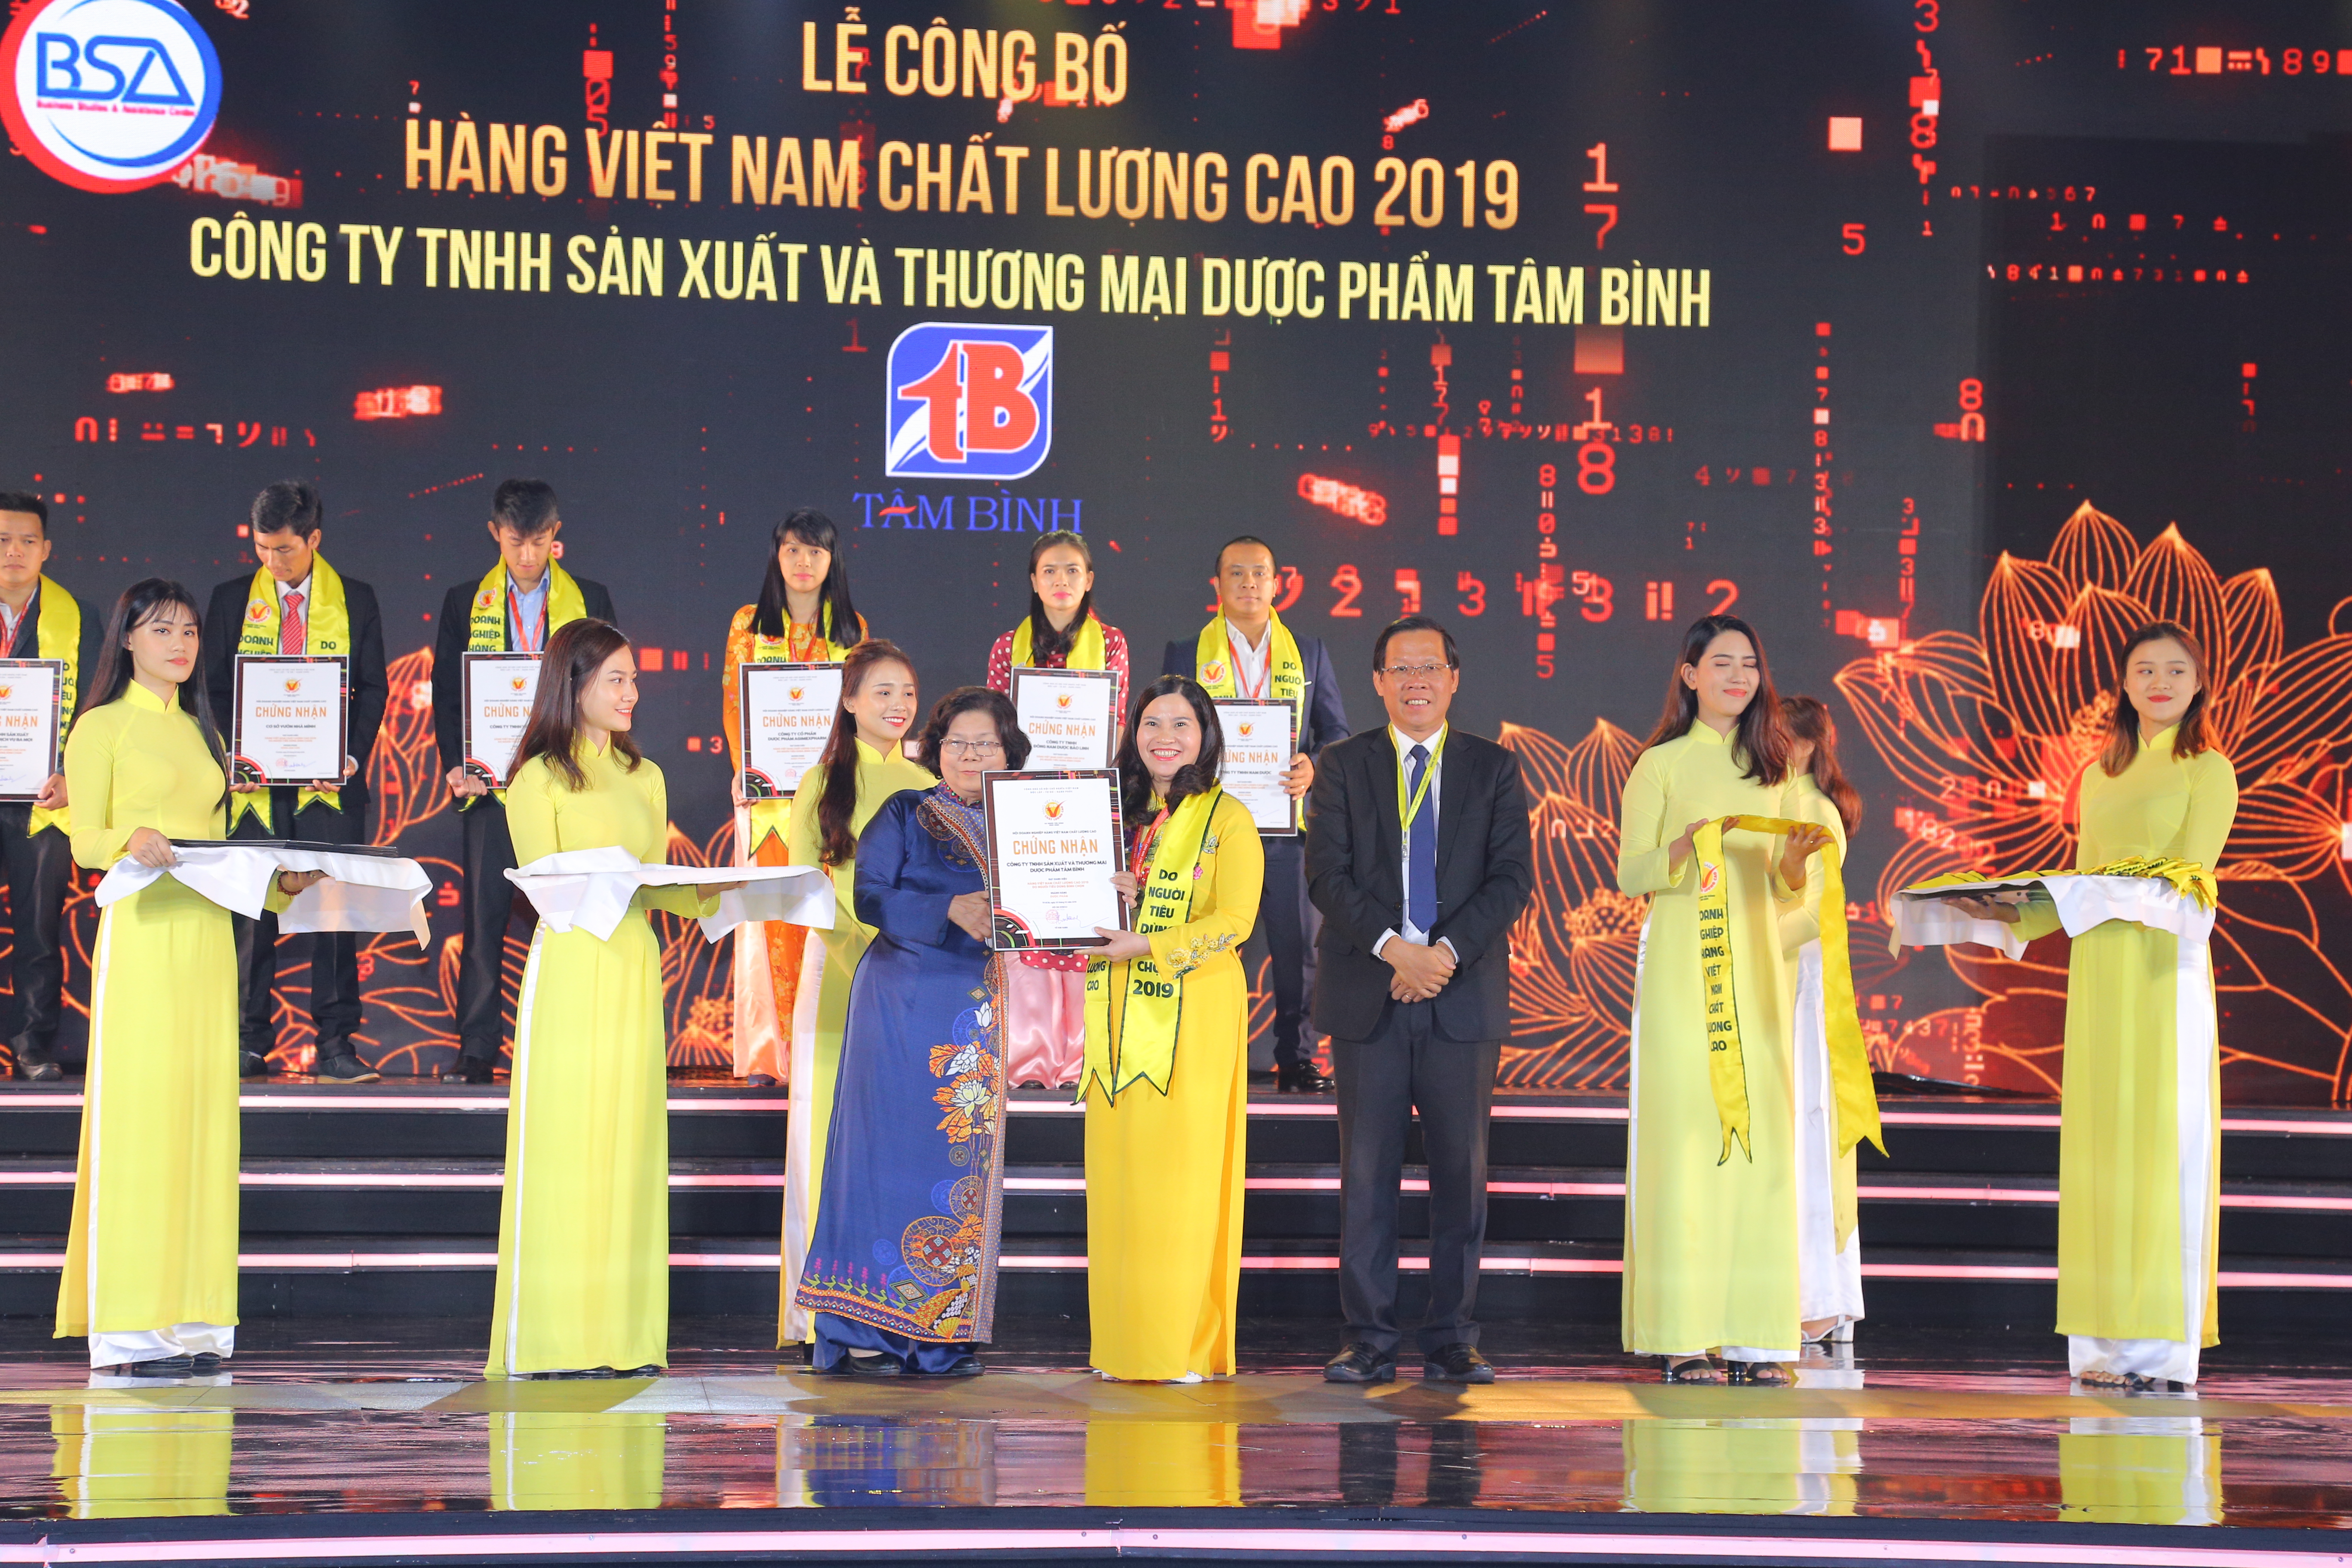 Vì sao Dược phẩm Tâm Bình 2 năm liên tiếp nhận giải thưởng Hàng Việt Nam chất lượng cao?